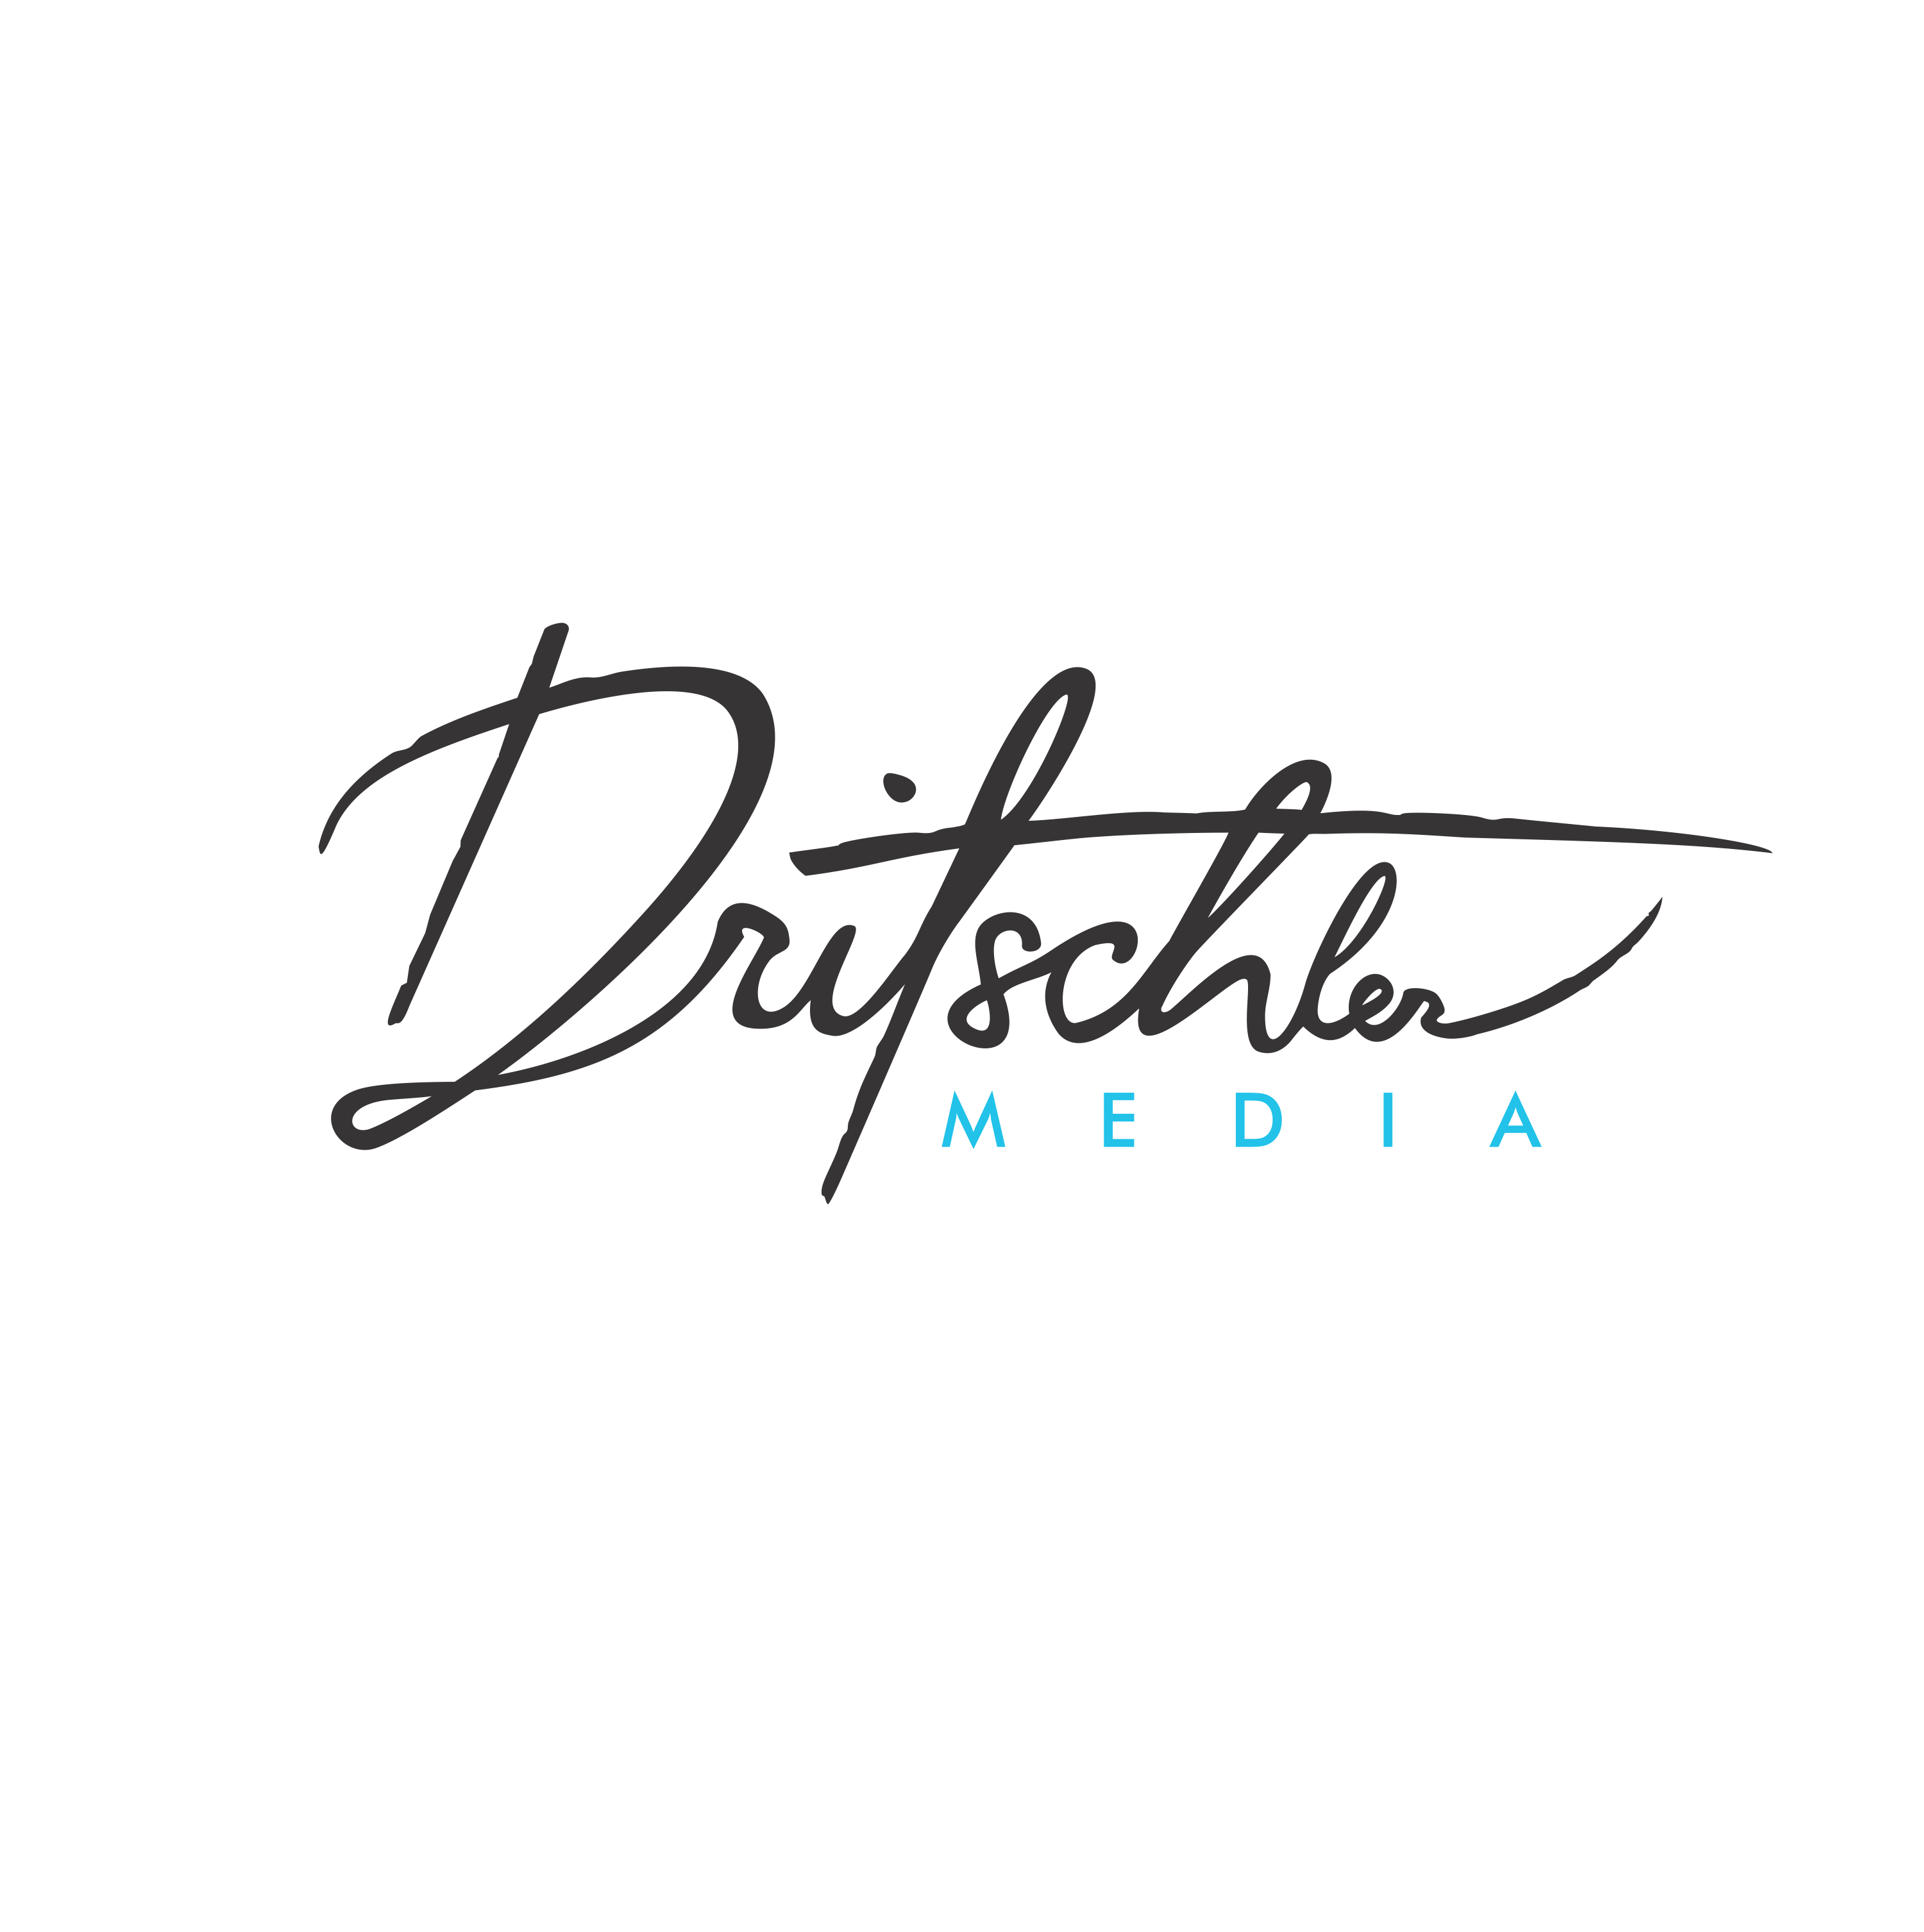 Dritschler Media